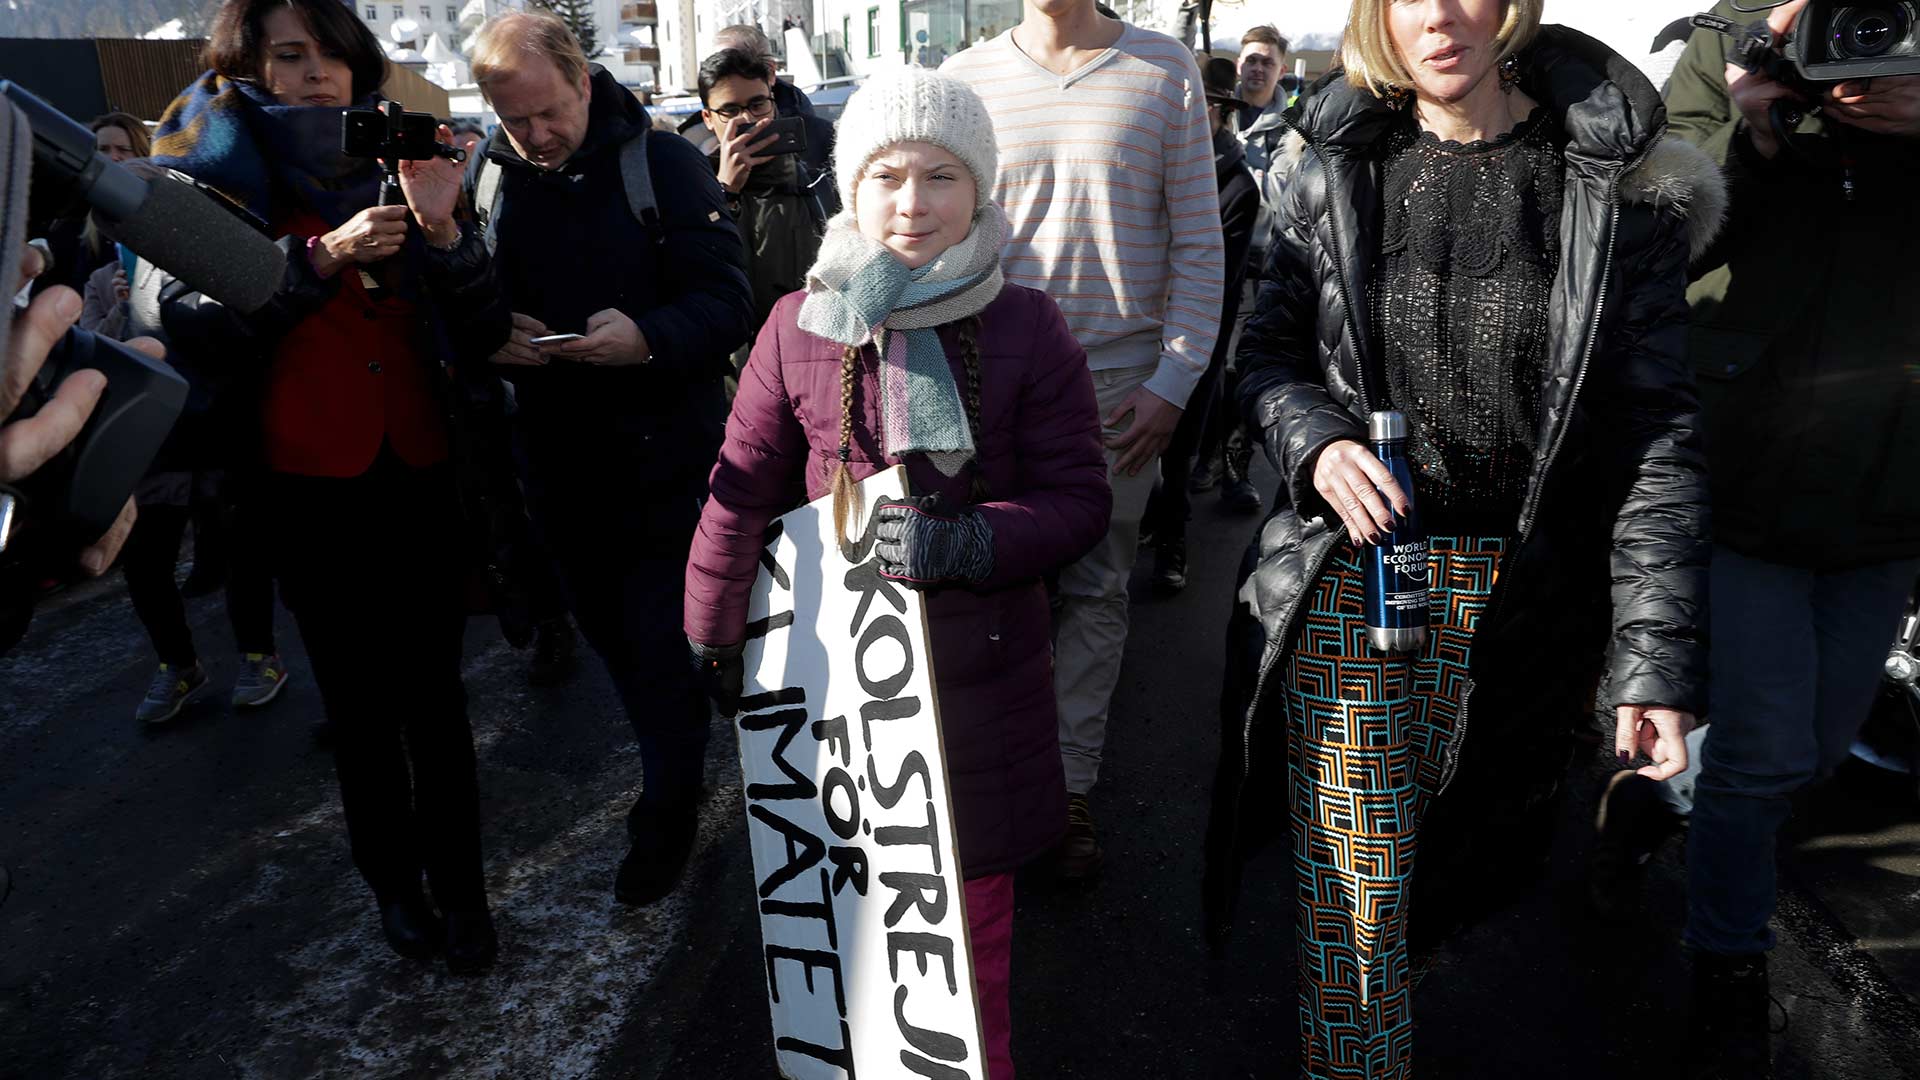 Greta Thunberg, la joven activista que se ha convertido en un icono mundial contra el cambio climático